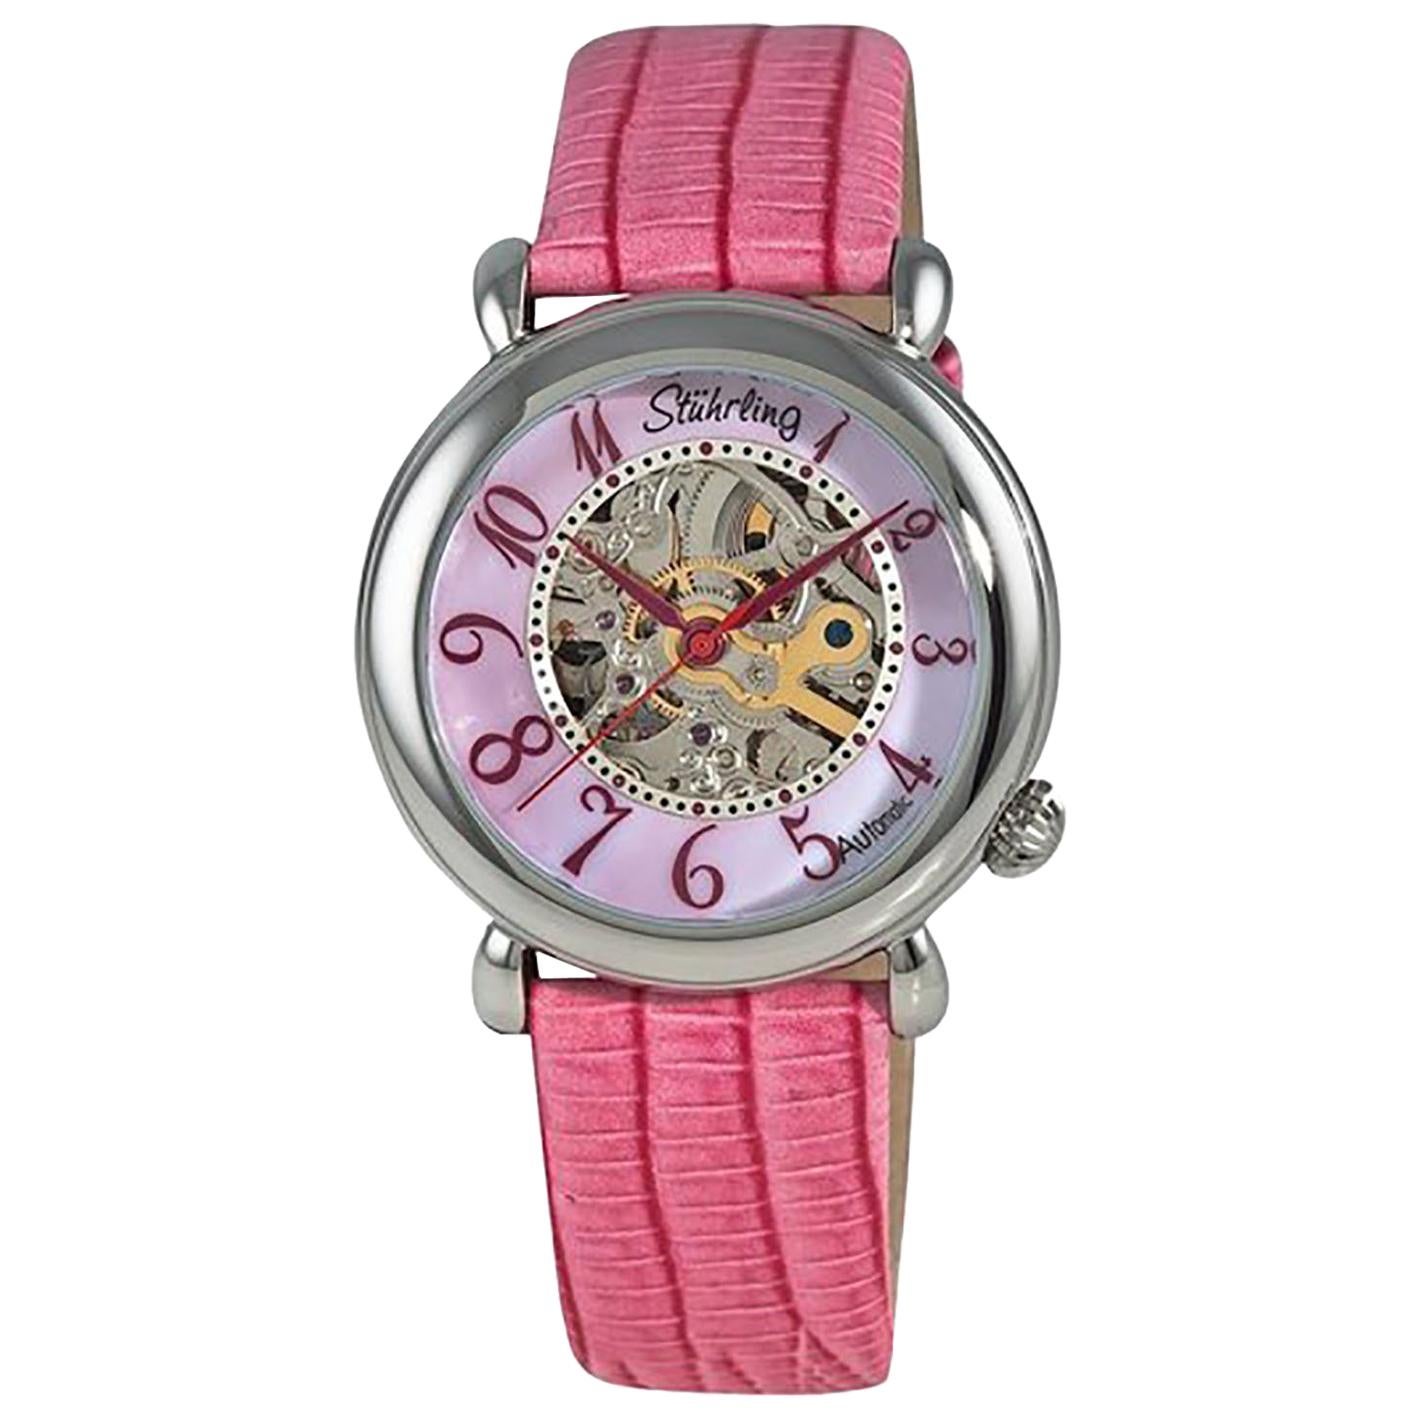 Stührling Pink Lady Wall Street 108.1215a9 Watch For Sale